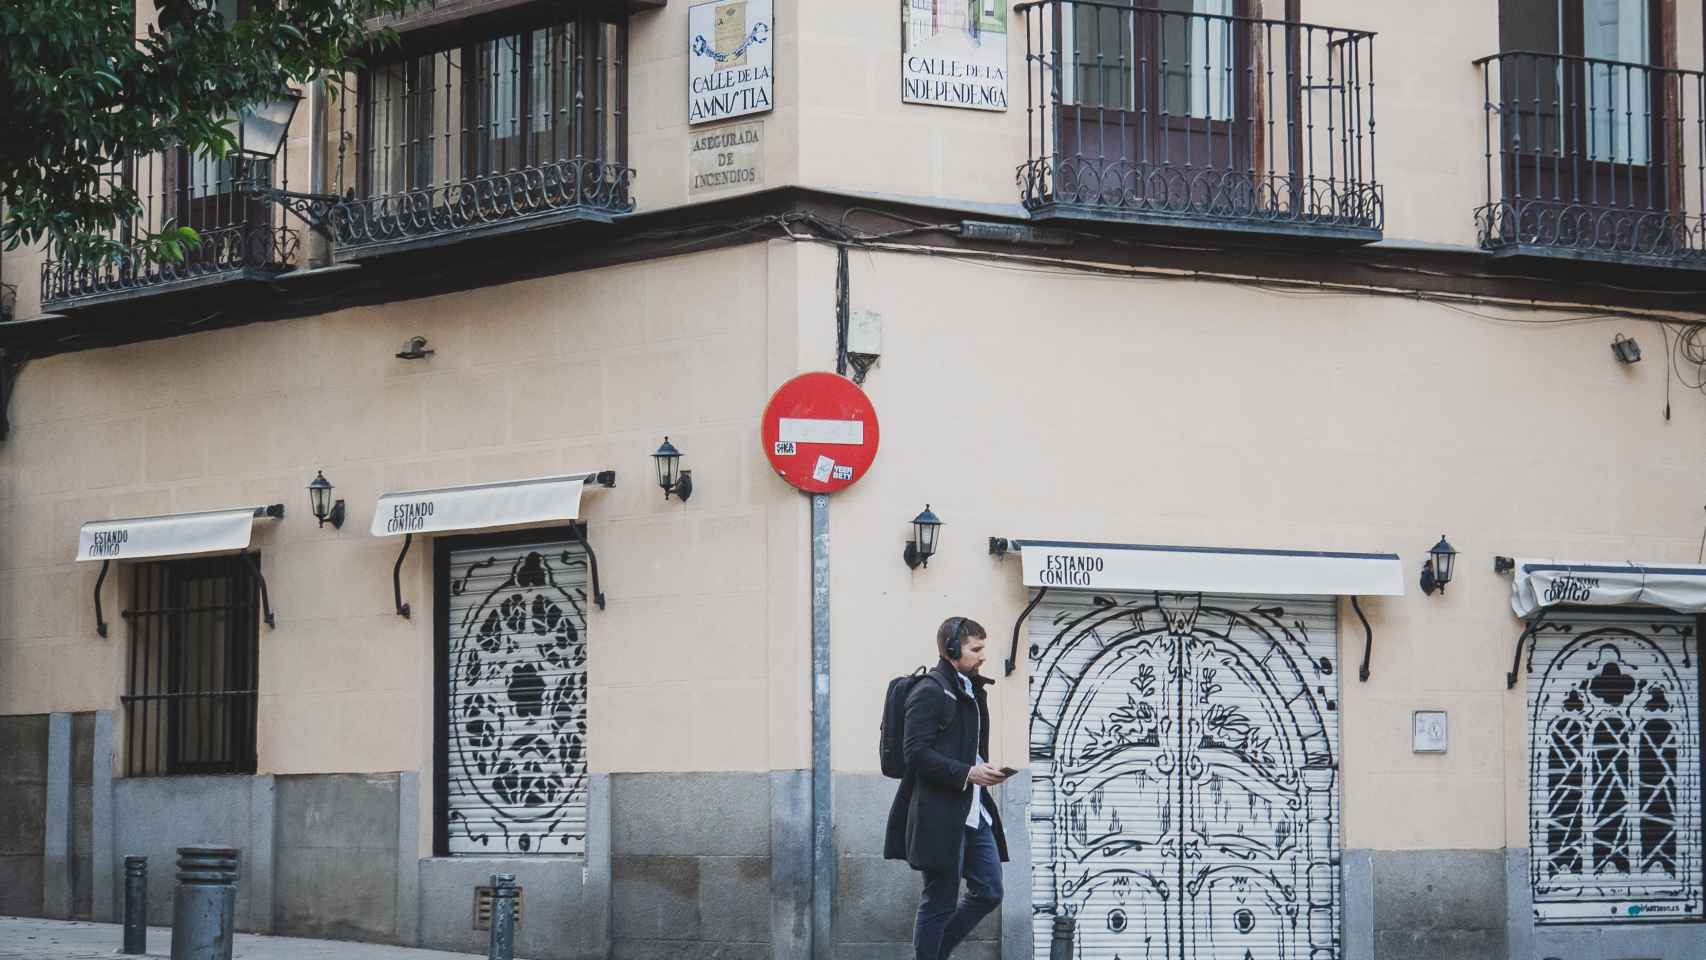 Un hombre pasa por delante del edificio de la calle Independencia con Amnistía, en pleno centro de Madrid.